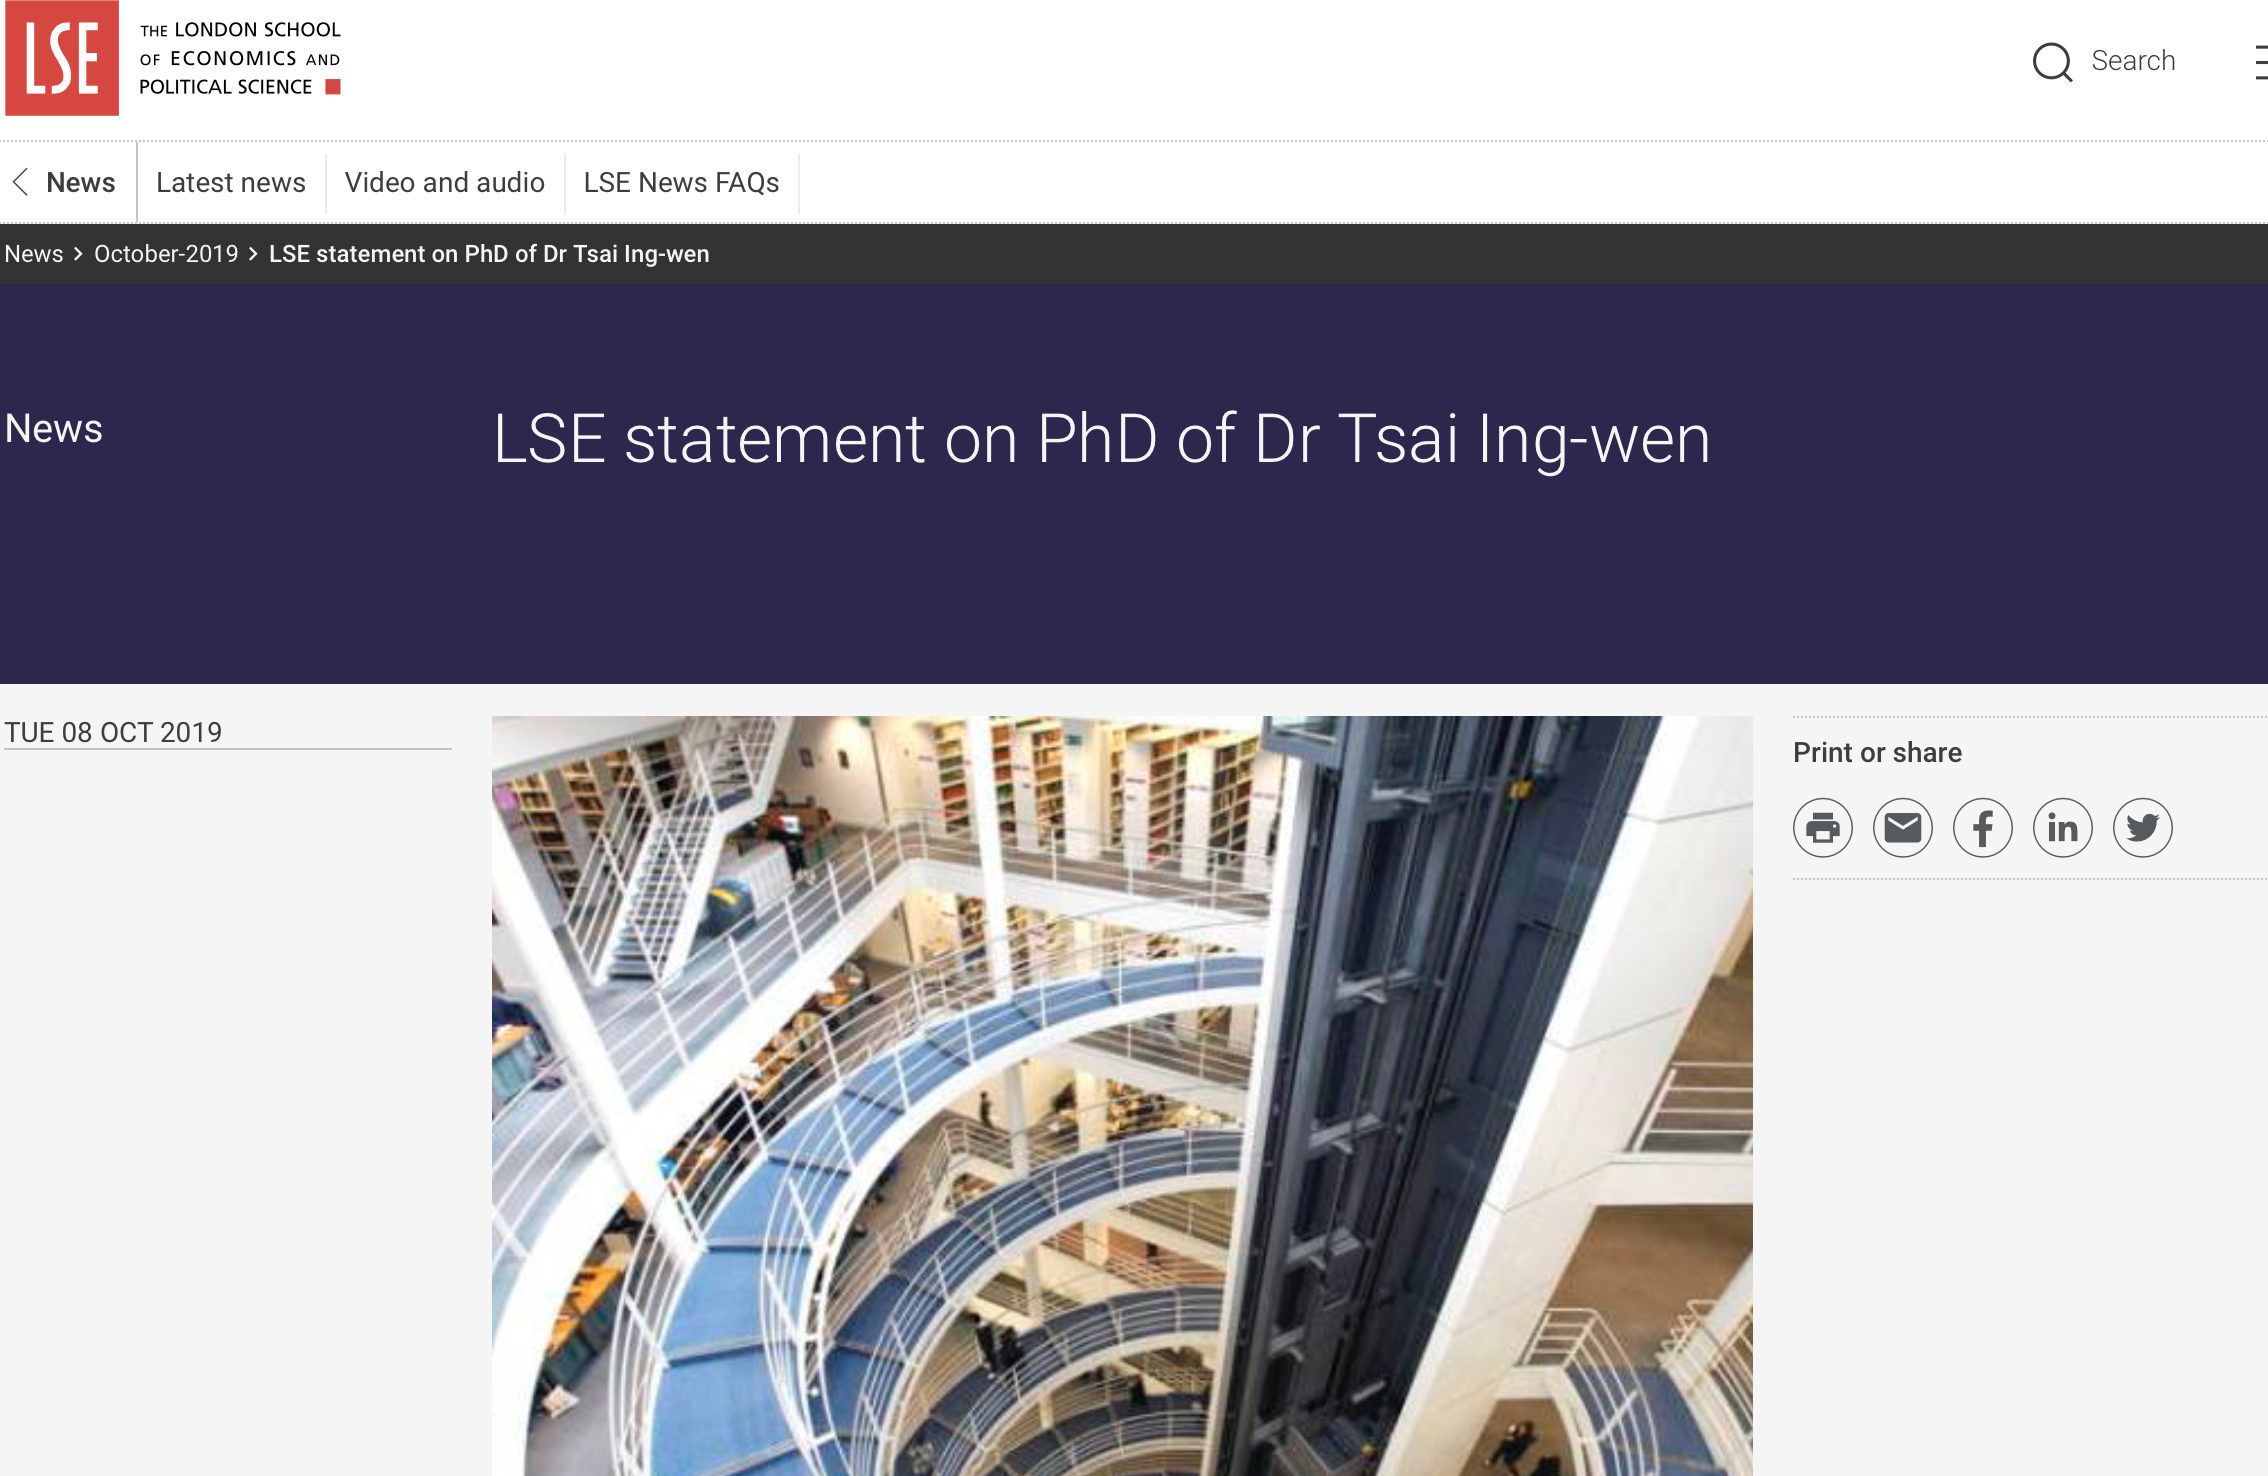 學位門風暴結案 LSE聲明證實有收錄蔡英文論文 - Yahoo奇摩新聞